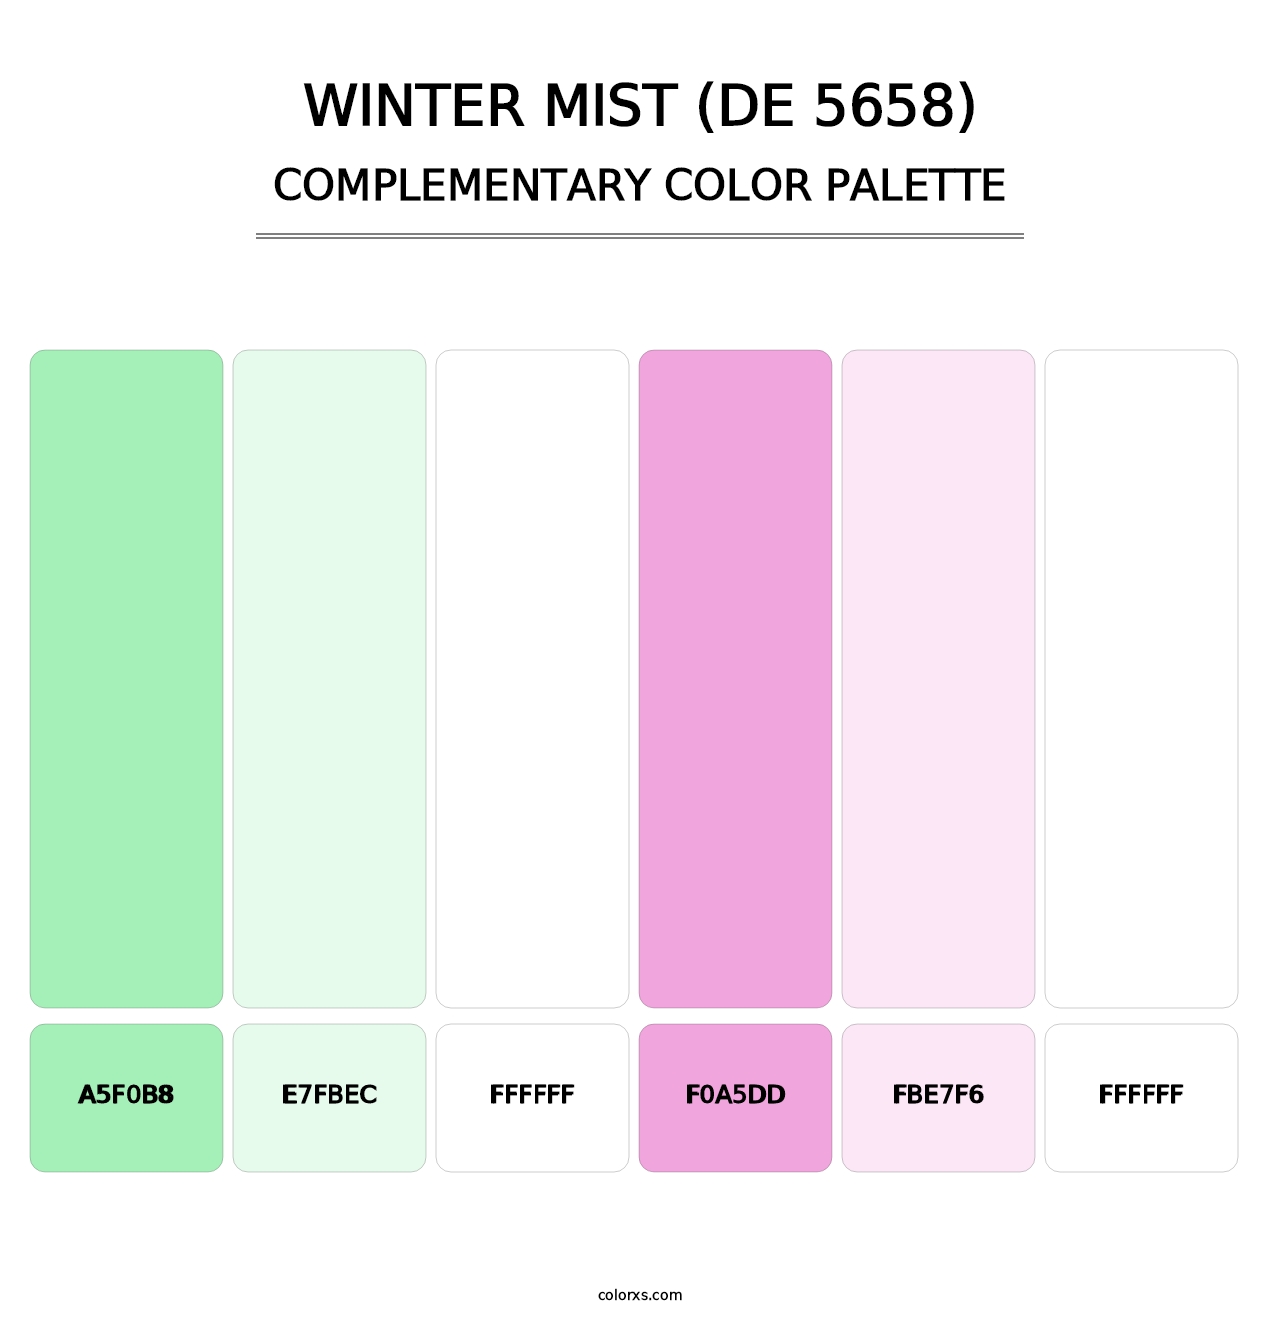 Winter Mist (DE 5658) - Complementary Color Palette